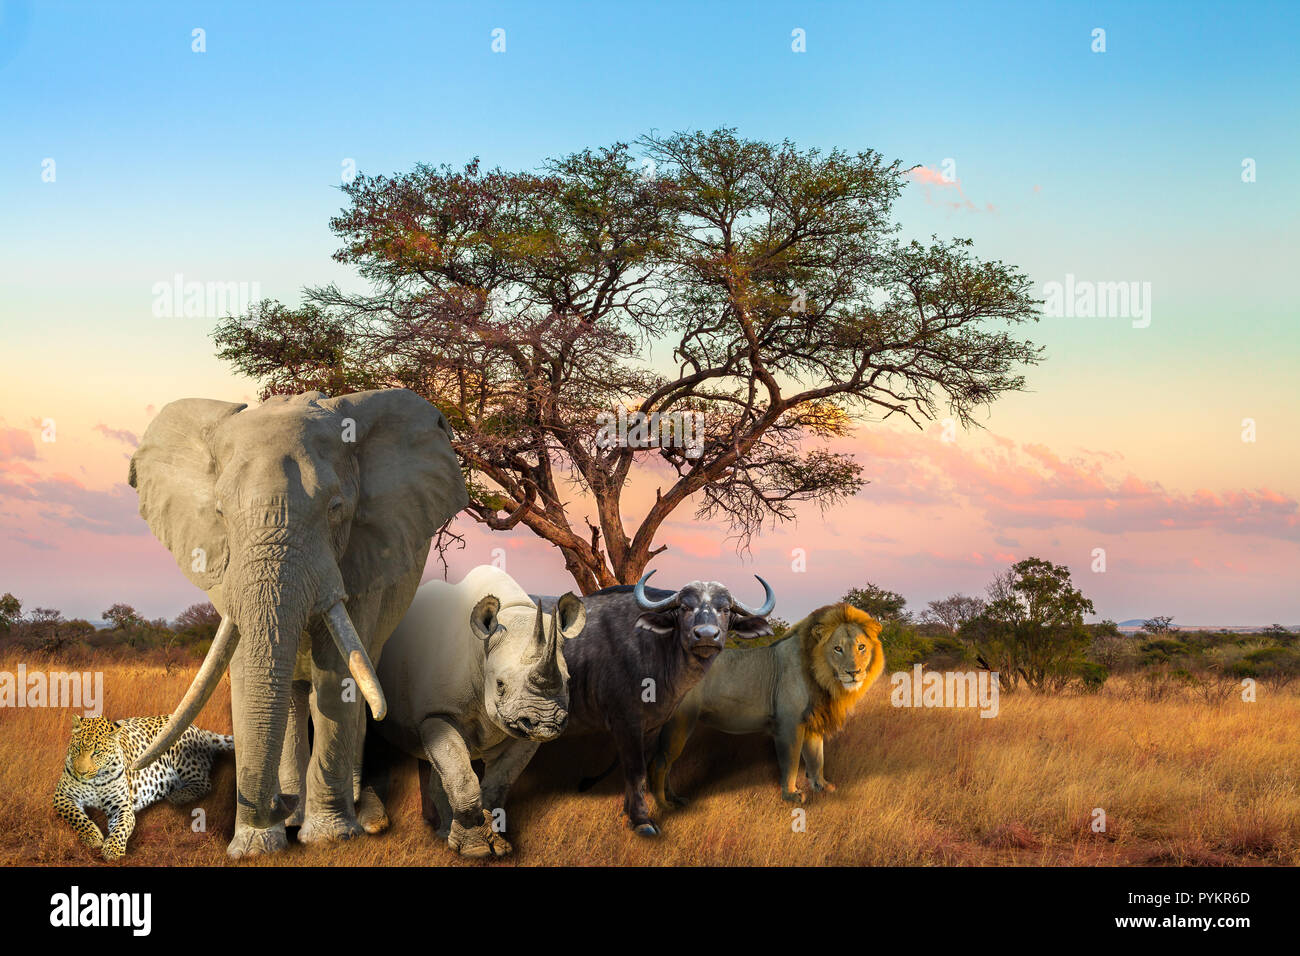 Die afrikanischen "Big Five": Leopard, Elefant, Spitzmaulnashorn, Büffel und Löwen in der Savanne Landschaft bei Sonnenuntergang. Safari Szene mit wilden Tieren. Wildlife Hintergrund. Stockfoto